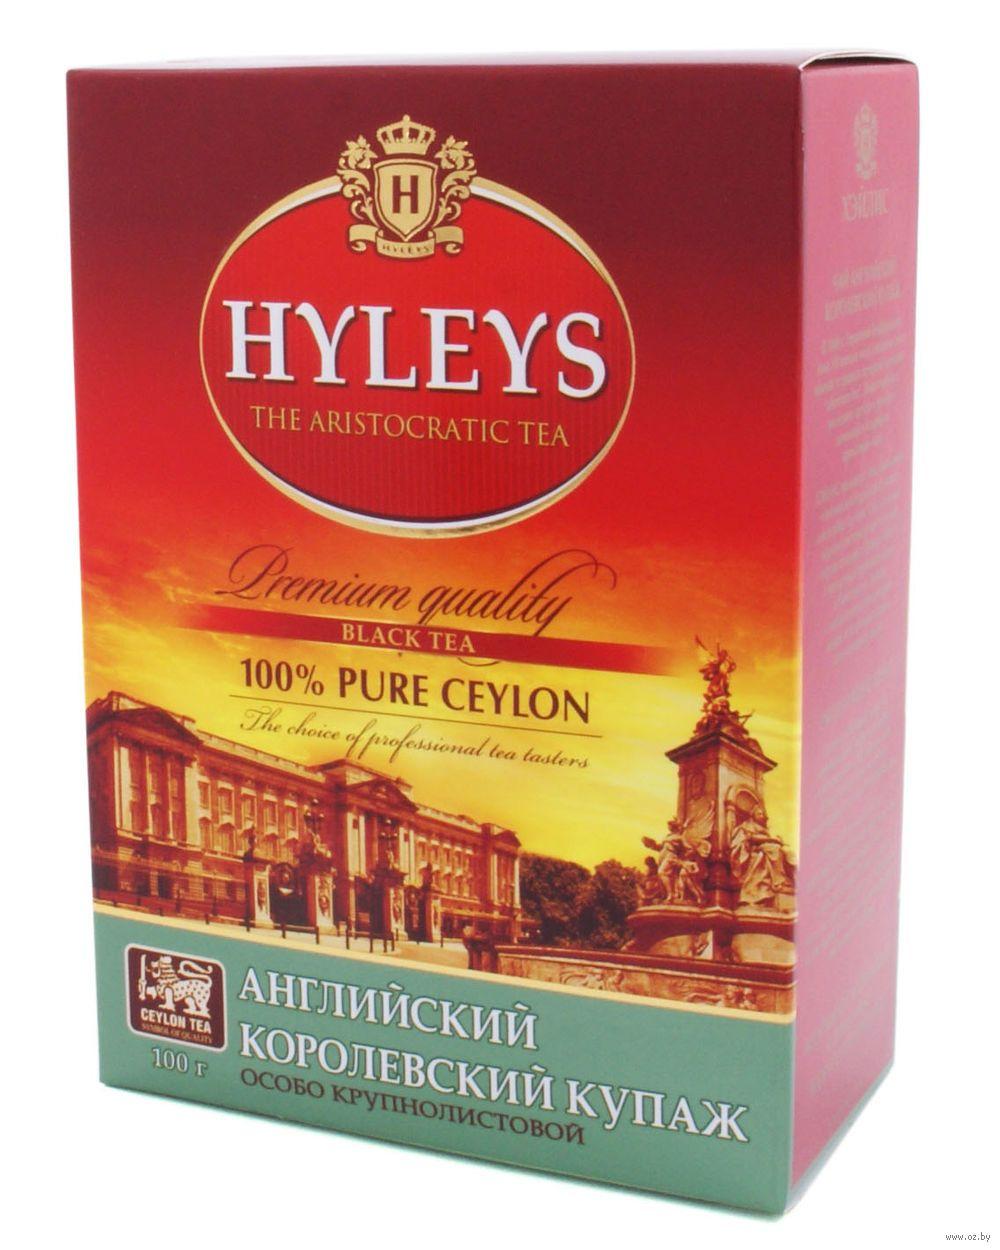 Чай Hyleys Английский Королевский купаж черный, 100 гр., картон